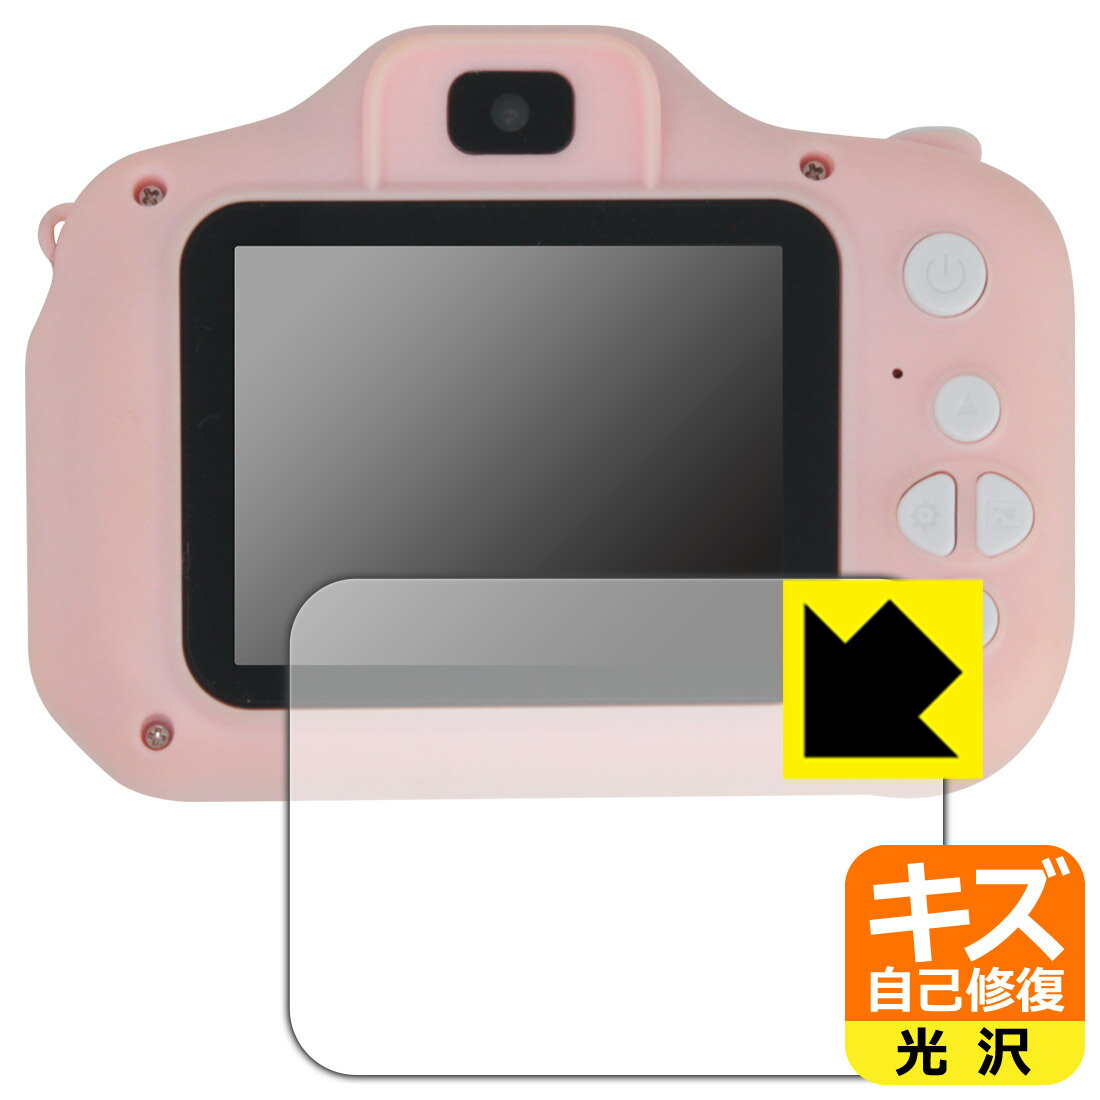 PDAH[ Manwe 2.4C` LbYJ (tBTCY 58mm~44mm)Ή LYȏC ی tB  { А